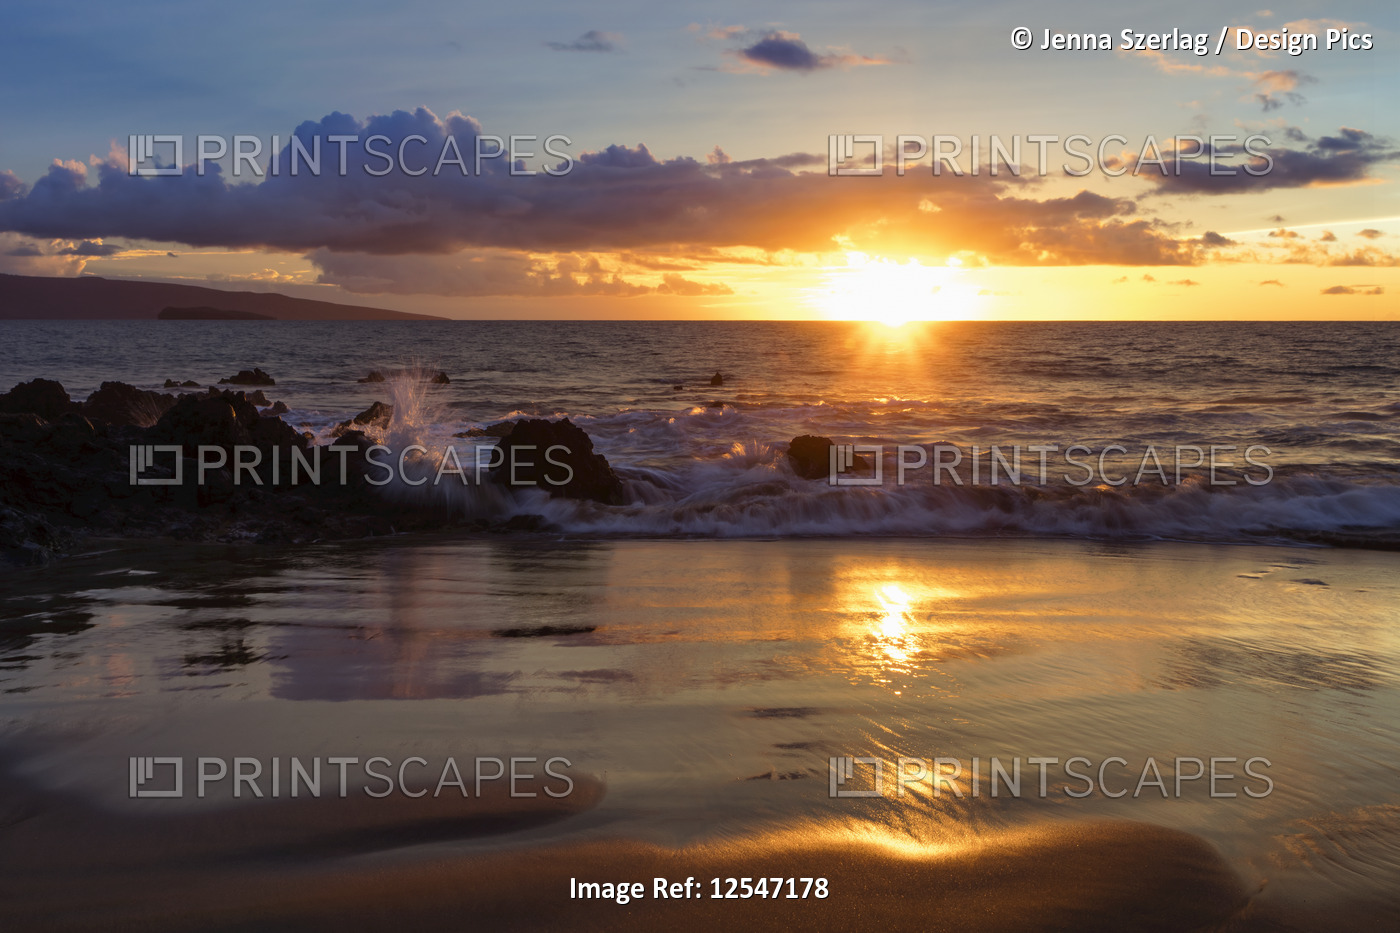 A Golden Sunset At A Makena Beach, Maui, Hawaii USA